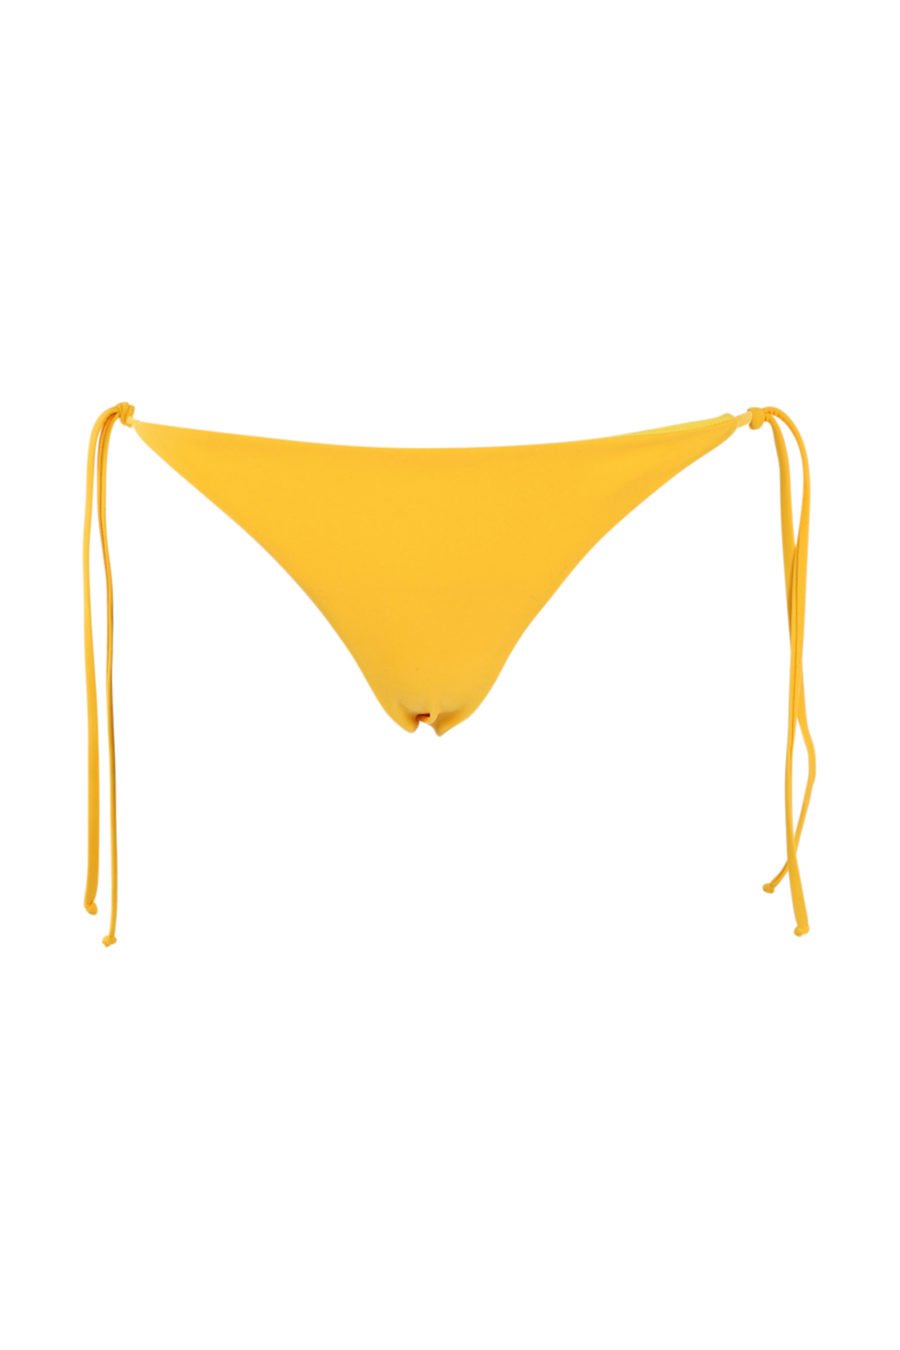 Bañador amarillo con cordones y logo - IMG 0921